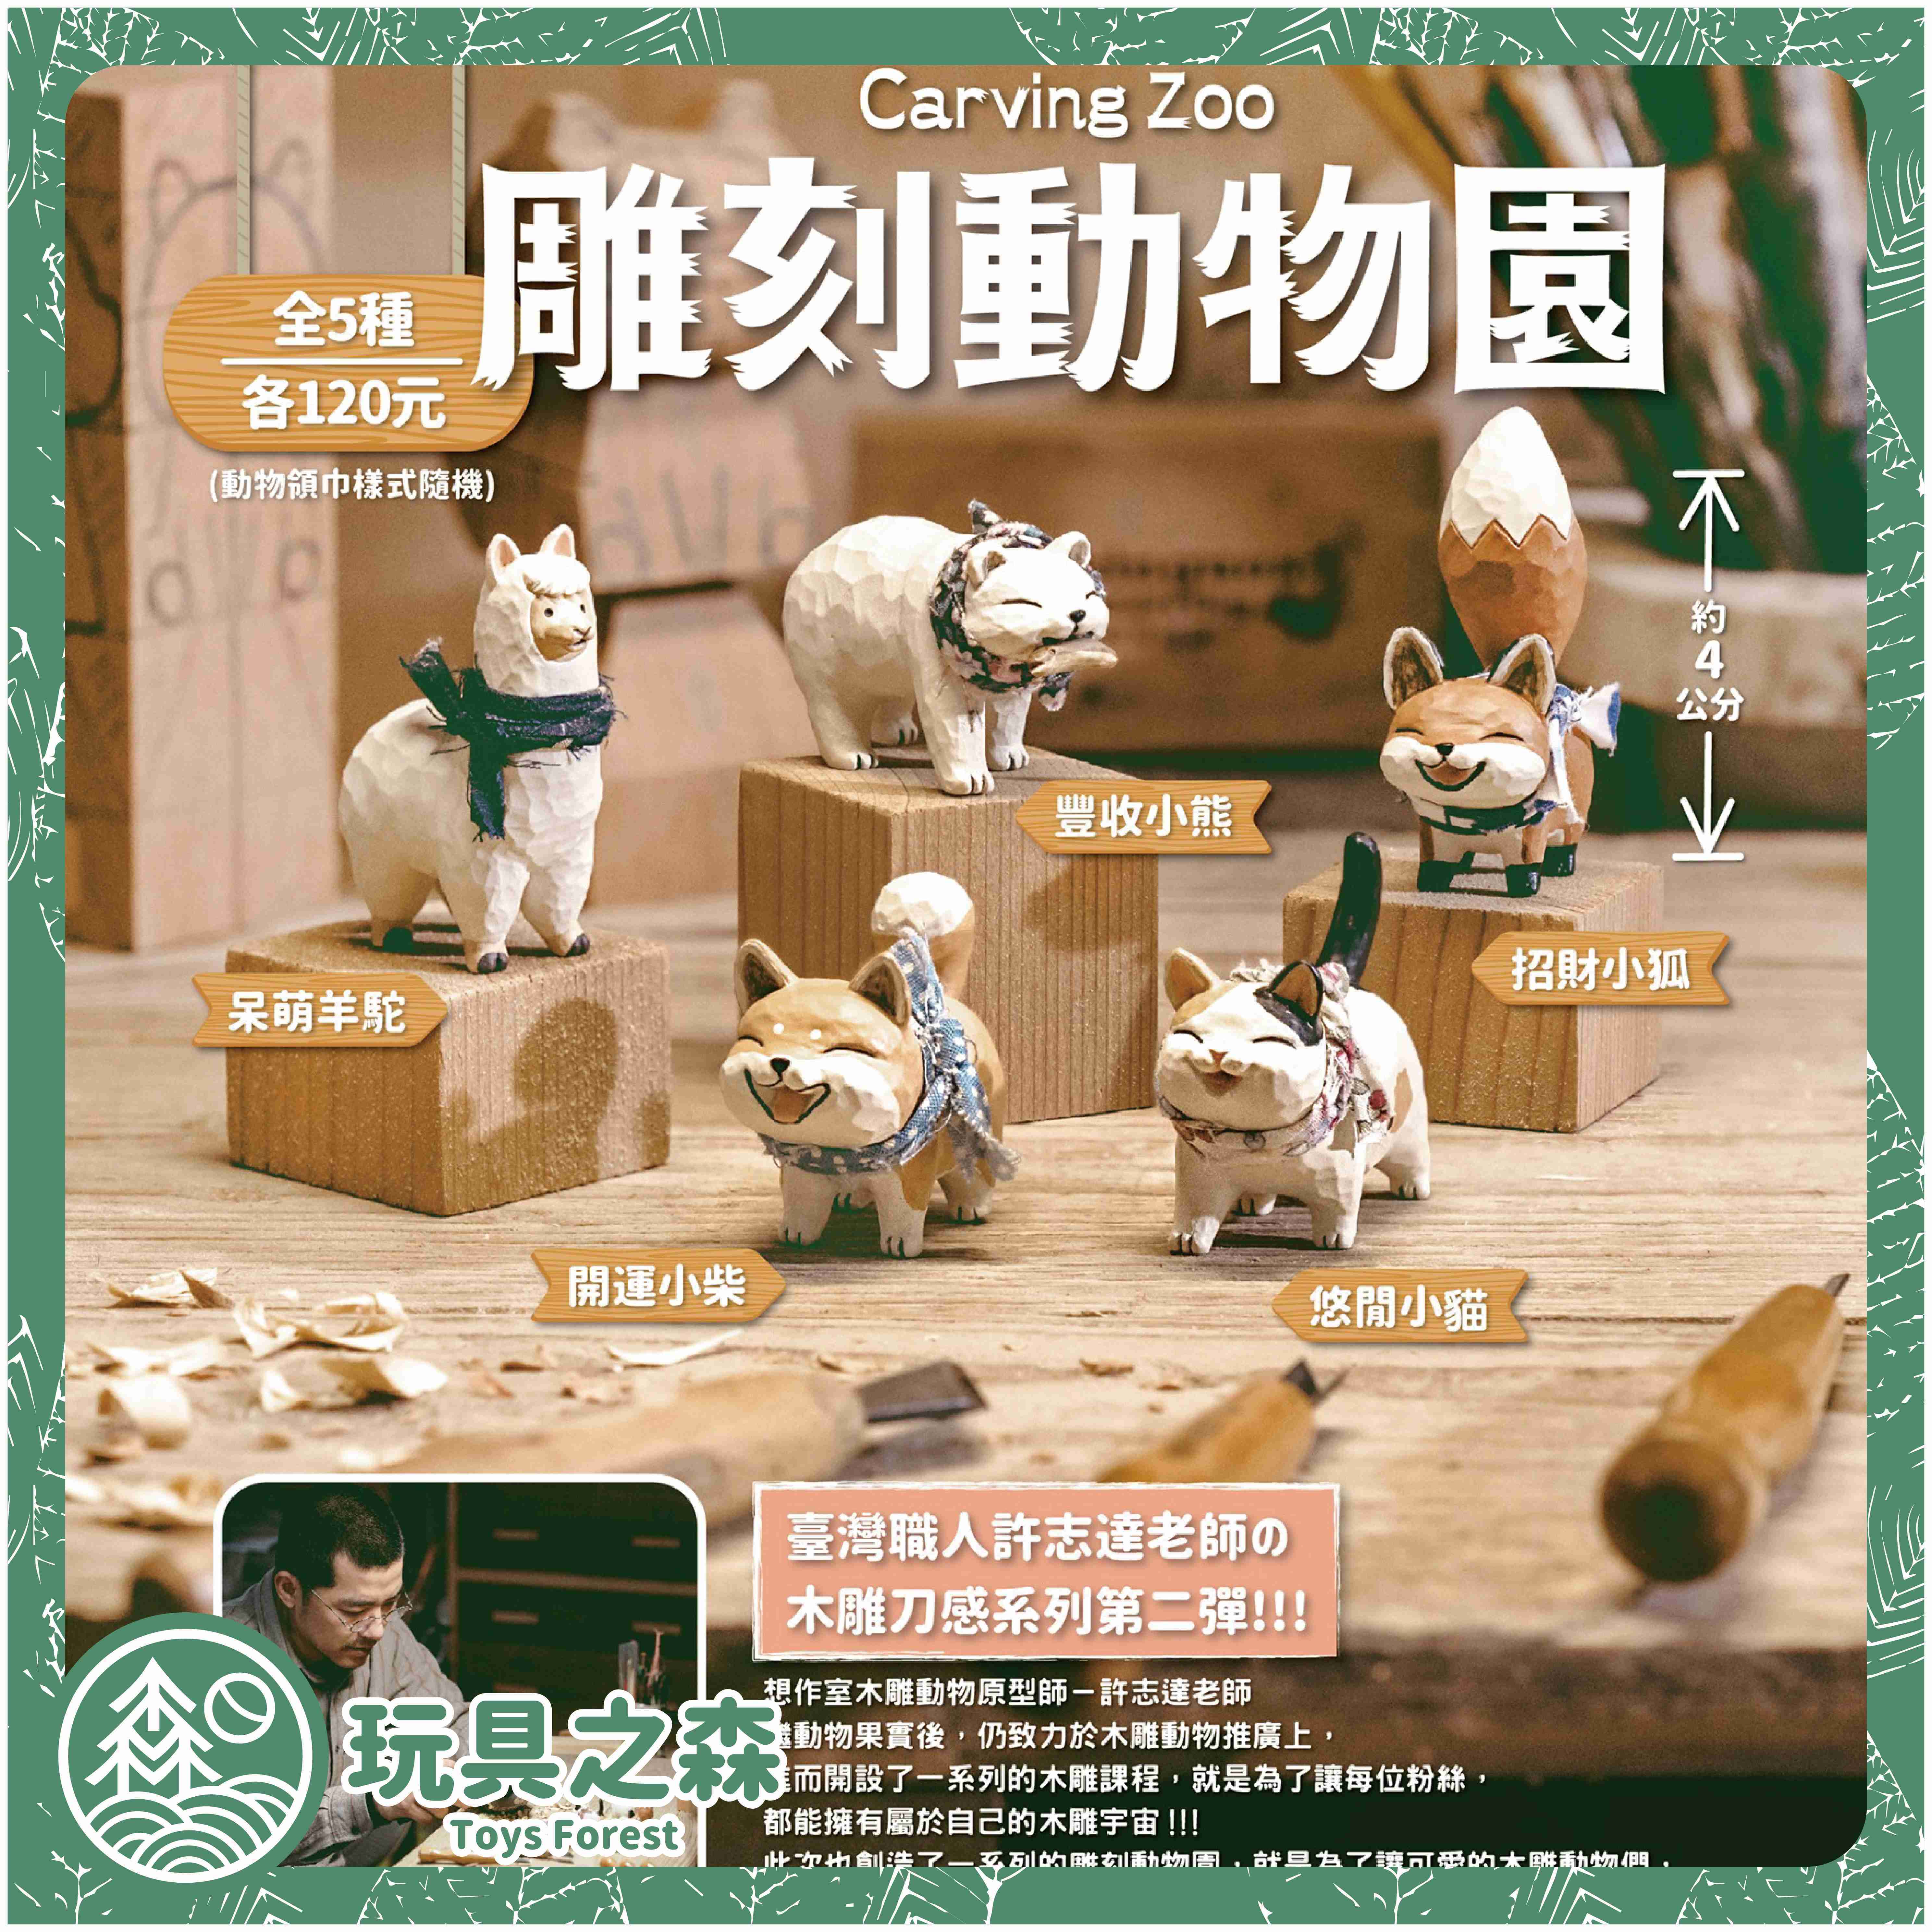 【玩具之森】《現貨》夥伴玩具✕想作室 - 雕刻動物園 木雕扭蛋 轉蛋 (全套5款出售)